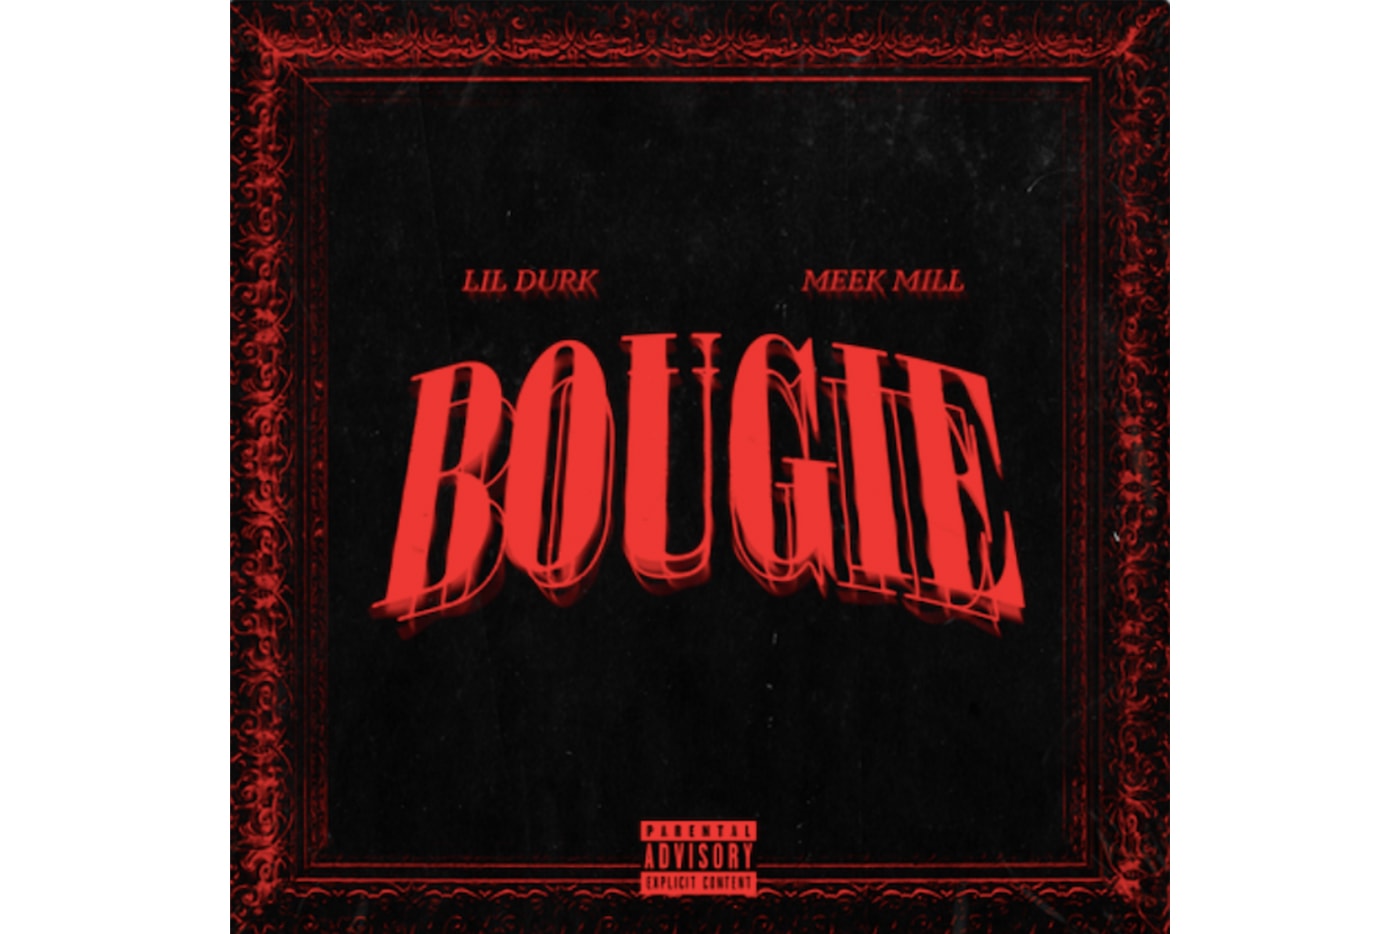 Lil Durk Bougie Featuring Meek Mill Single Stream trap hip-hop rap 